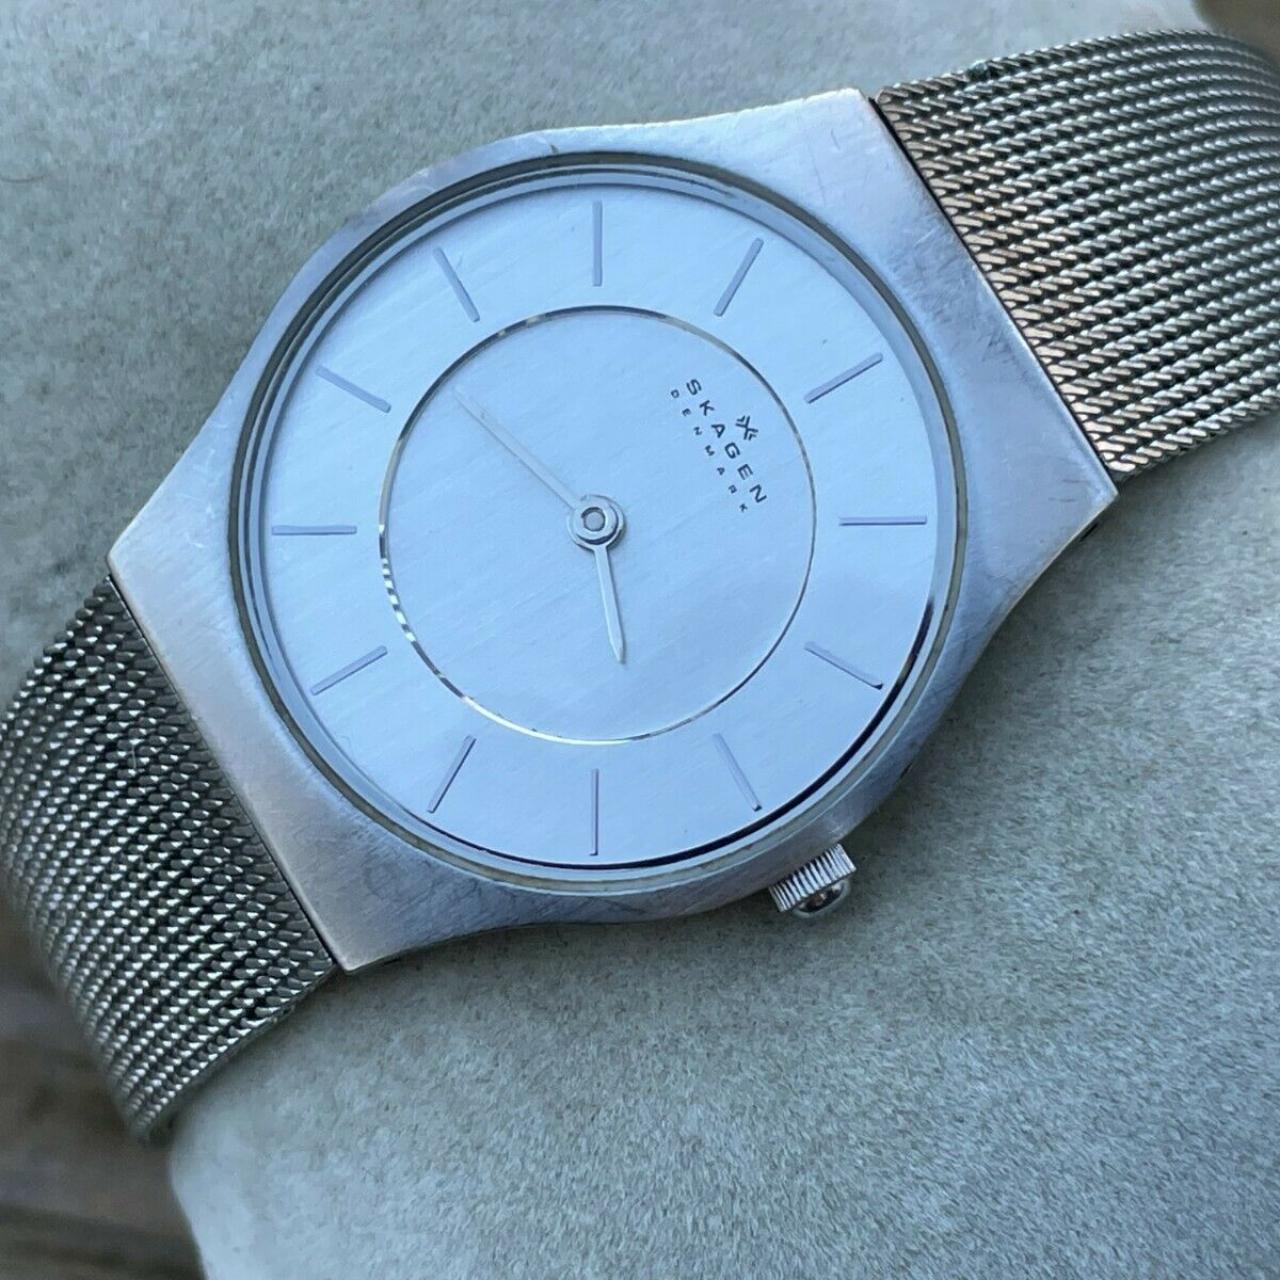 Product Image 1 - Skagen Denmark Women Wrist Watch